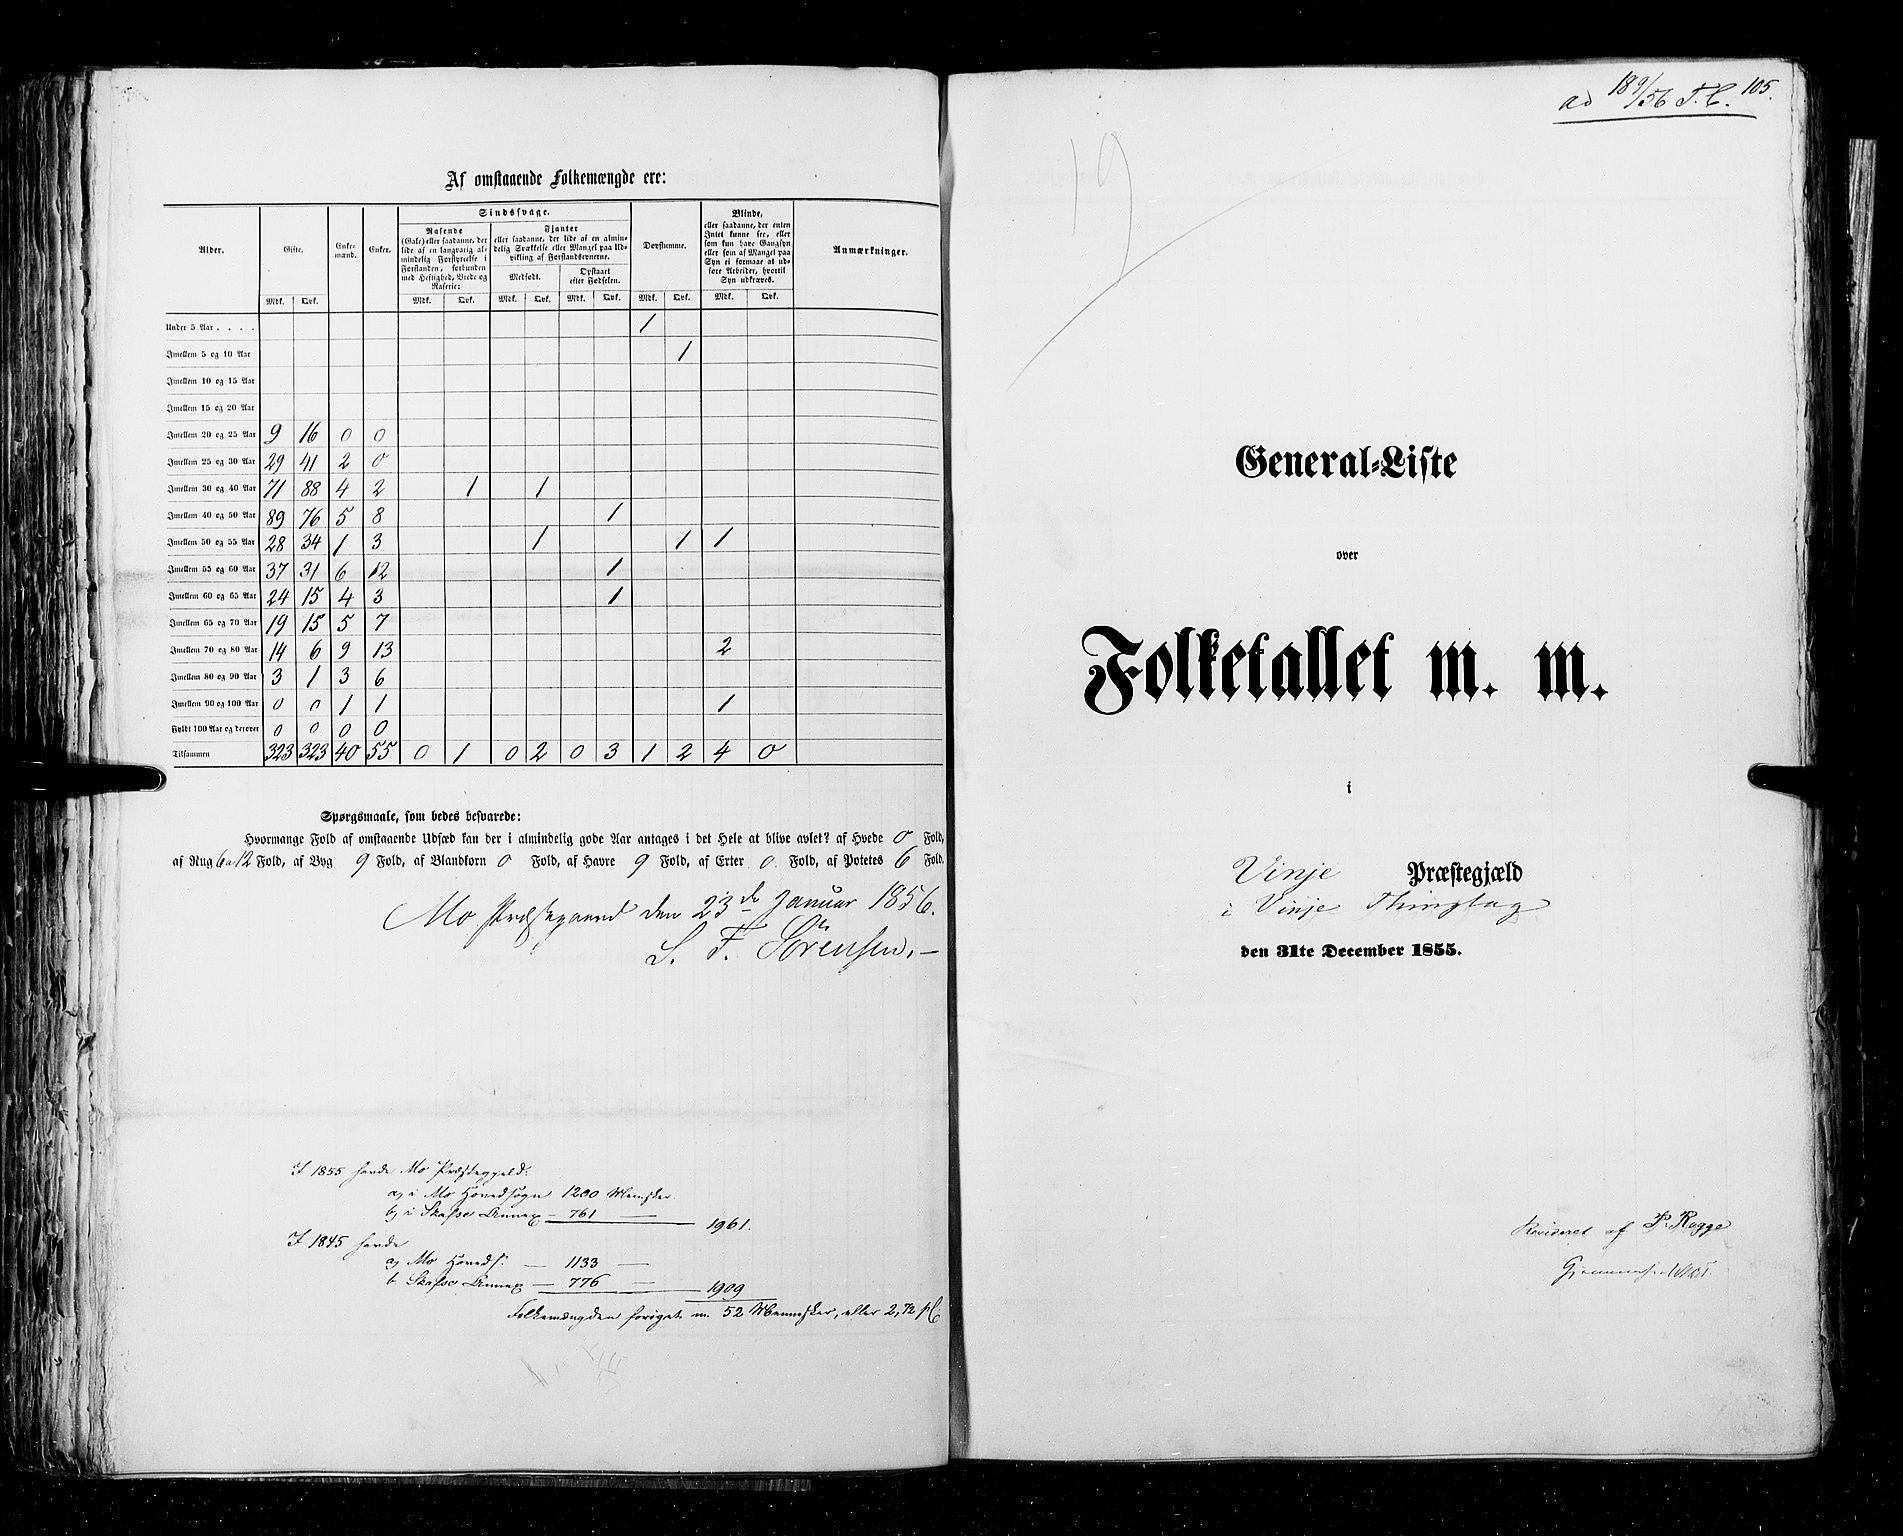 RA, Census 1855, vol. 3: Bratsberg amt, Nedenes amt og Lister og Mandal amt, 1855, p. 105